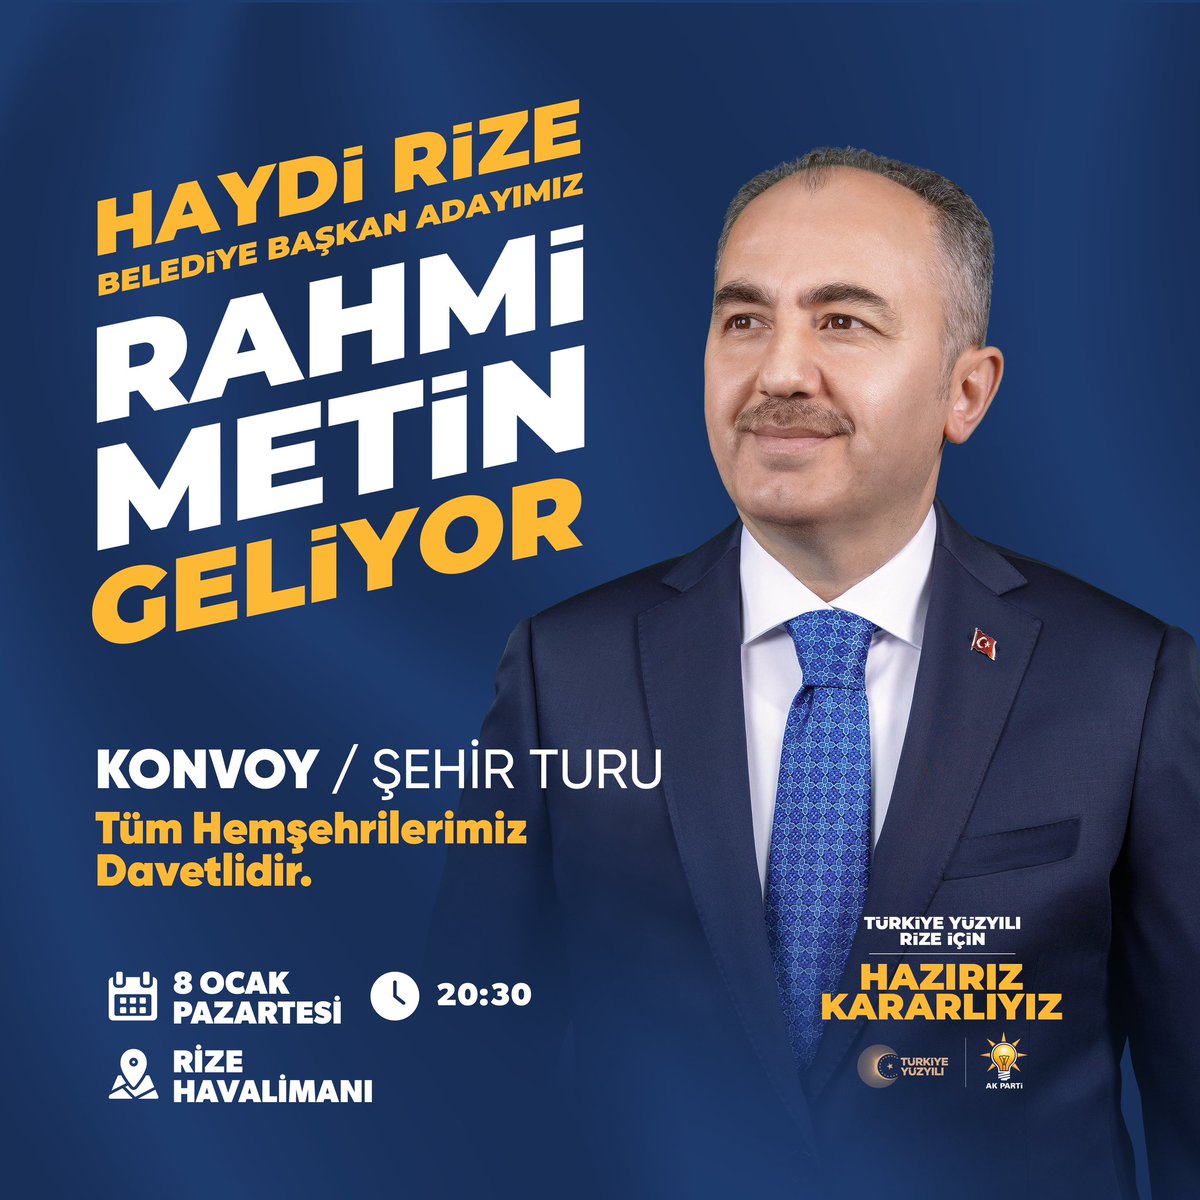 Rize Belediye Başkanımız ve Belediye Başkan Adayımız Rahmi Metin’i 8 Ocak Pazartesi Günü saat 20.30 ‘da Rize Artvin Havalimanımızda karşılıyoruz Türkiye Yüzyılı Rize için #HazırızKararlıyız